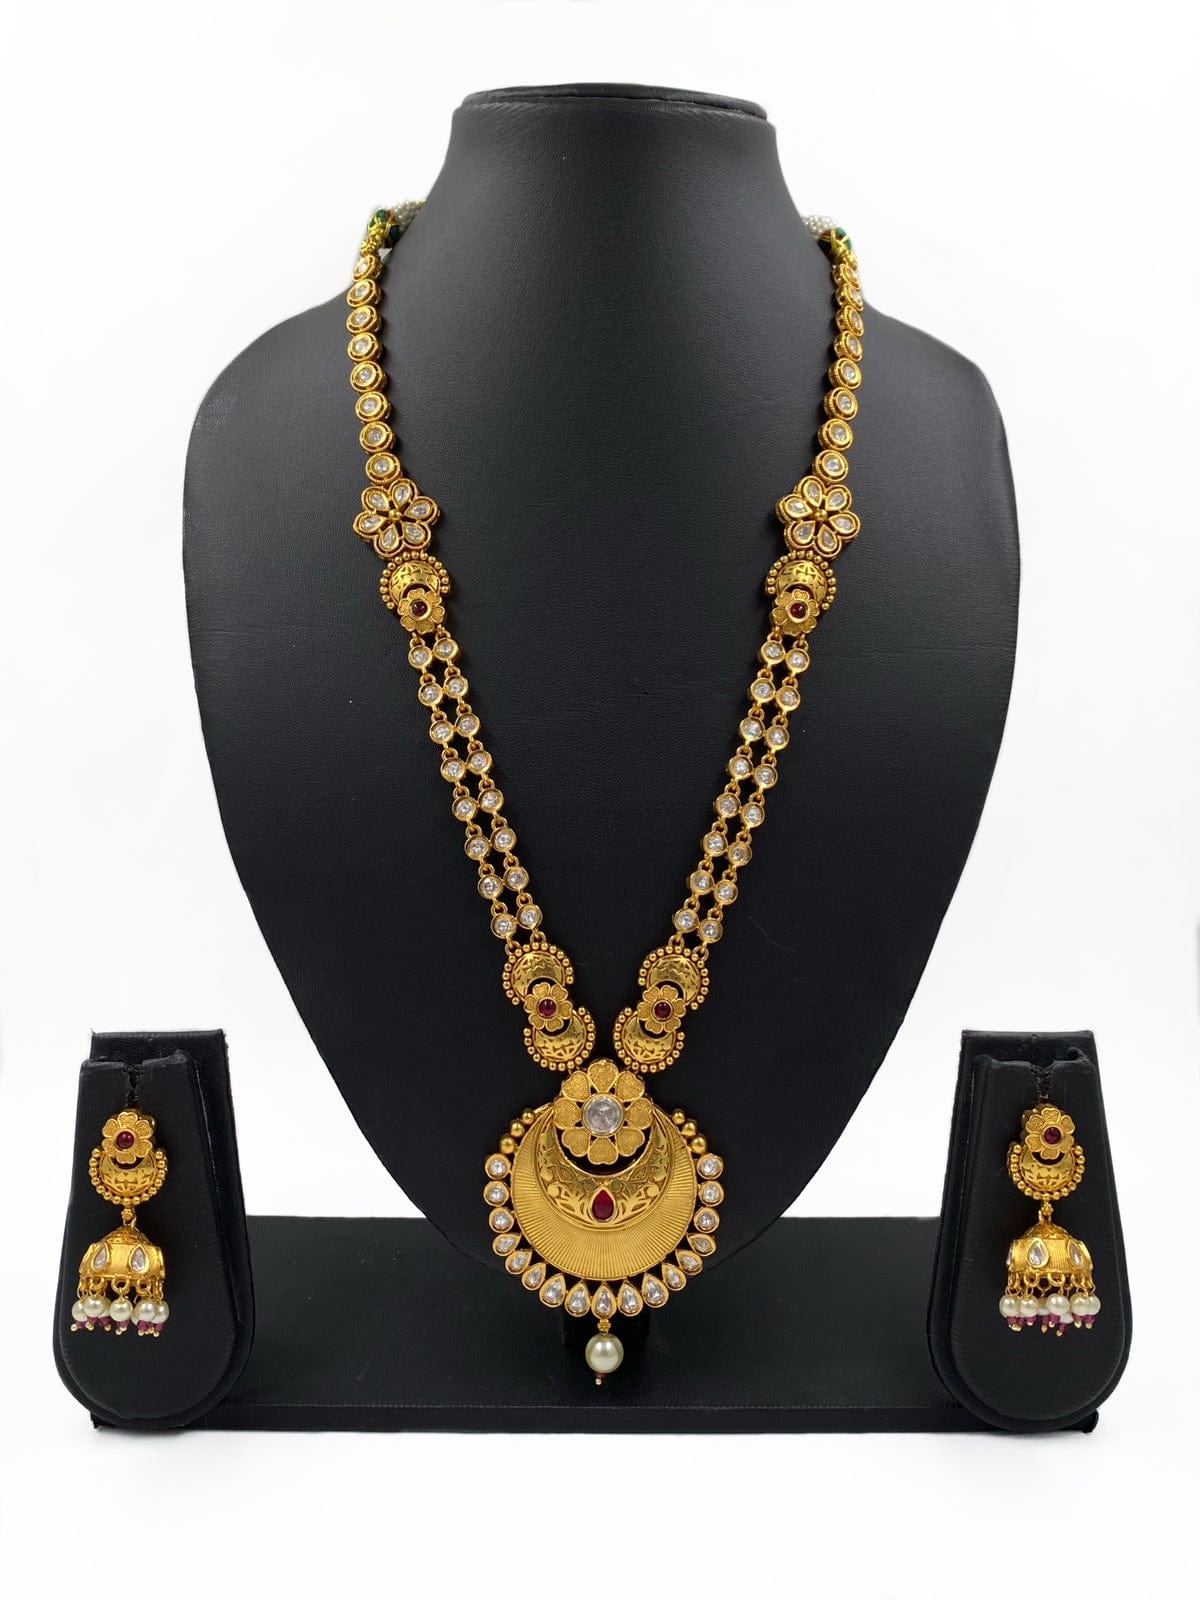 Gold Plated Studded Kundan Long Golden Necklace Set By Gehna Shop Antique Golden Necklace Sets